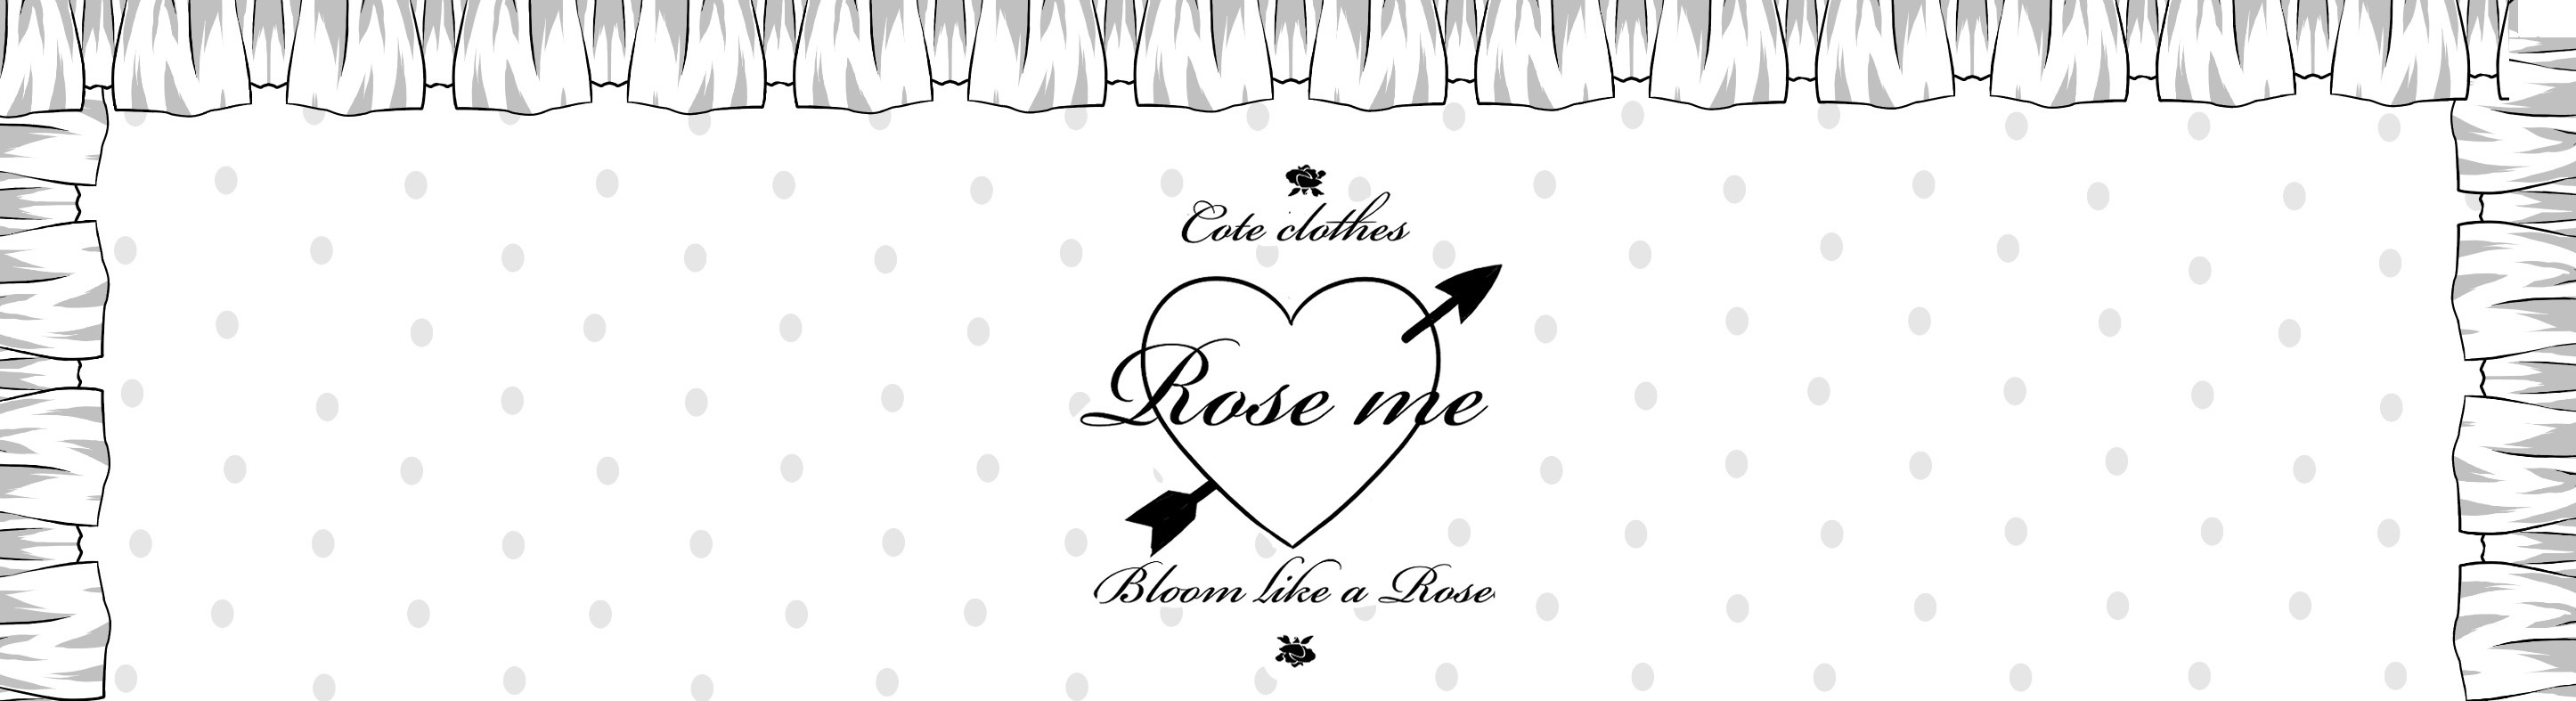 rose me